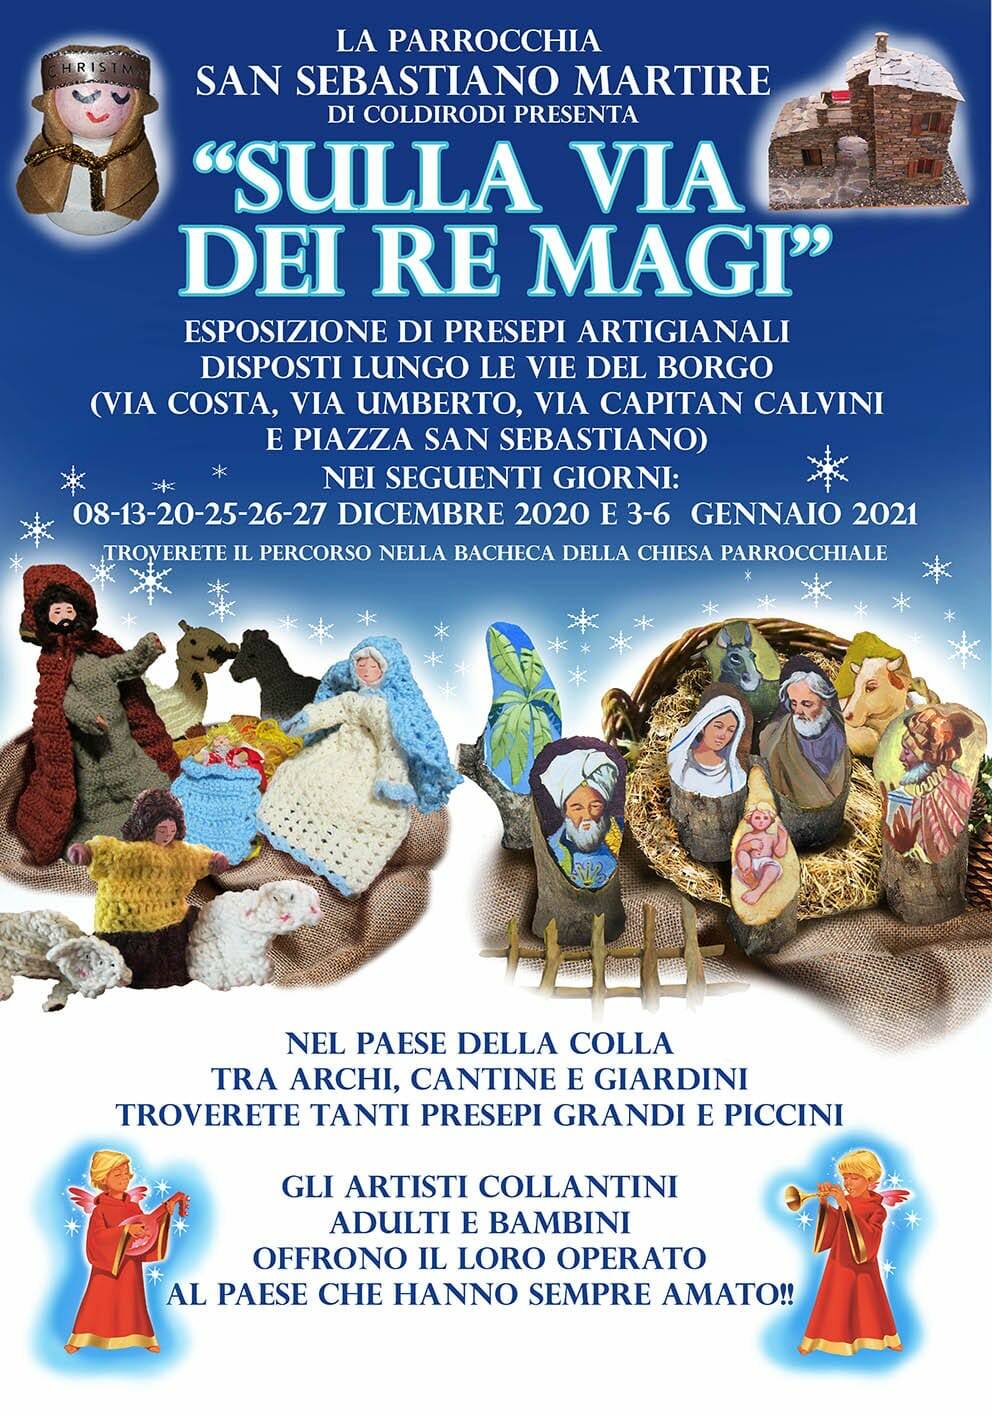 Sanremo, la parrocchia di San Sebastiano presenta Sulla via dei re Magi:  esposizione di presepi artigianali a Coldirodi - Riviera24